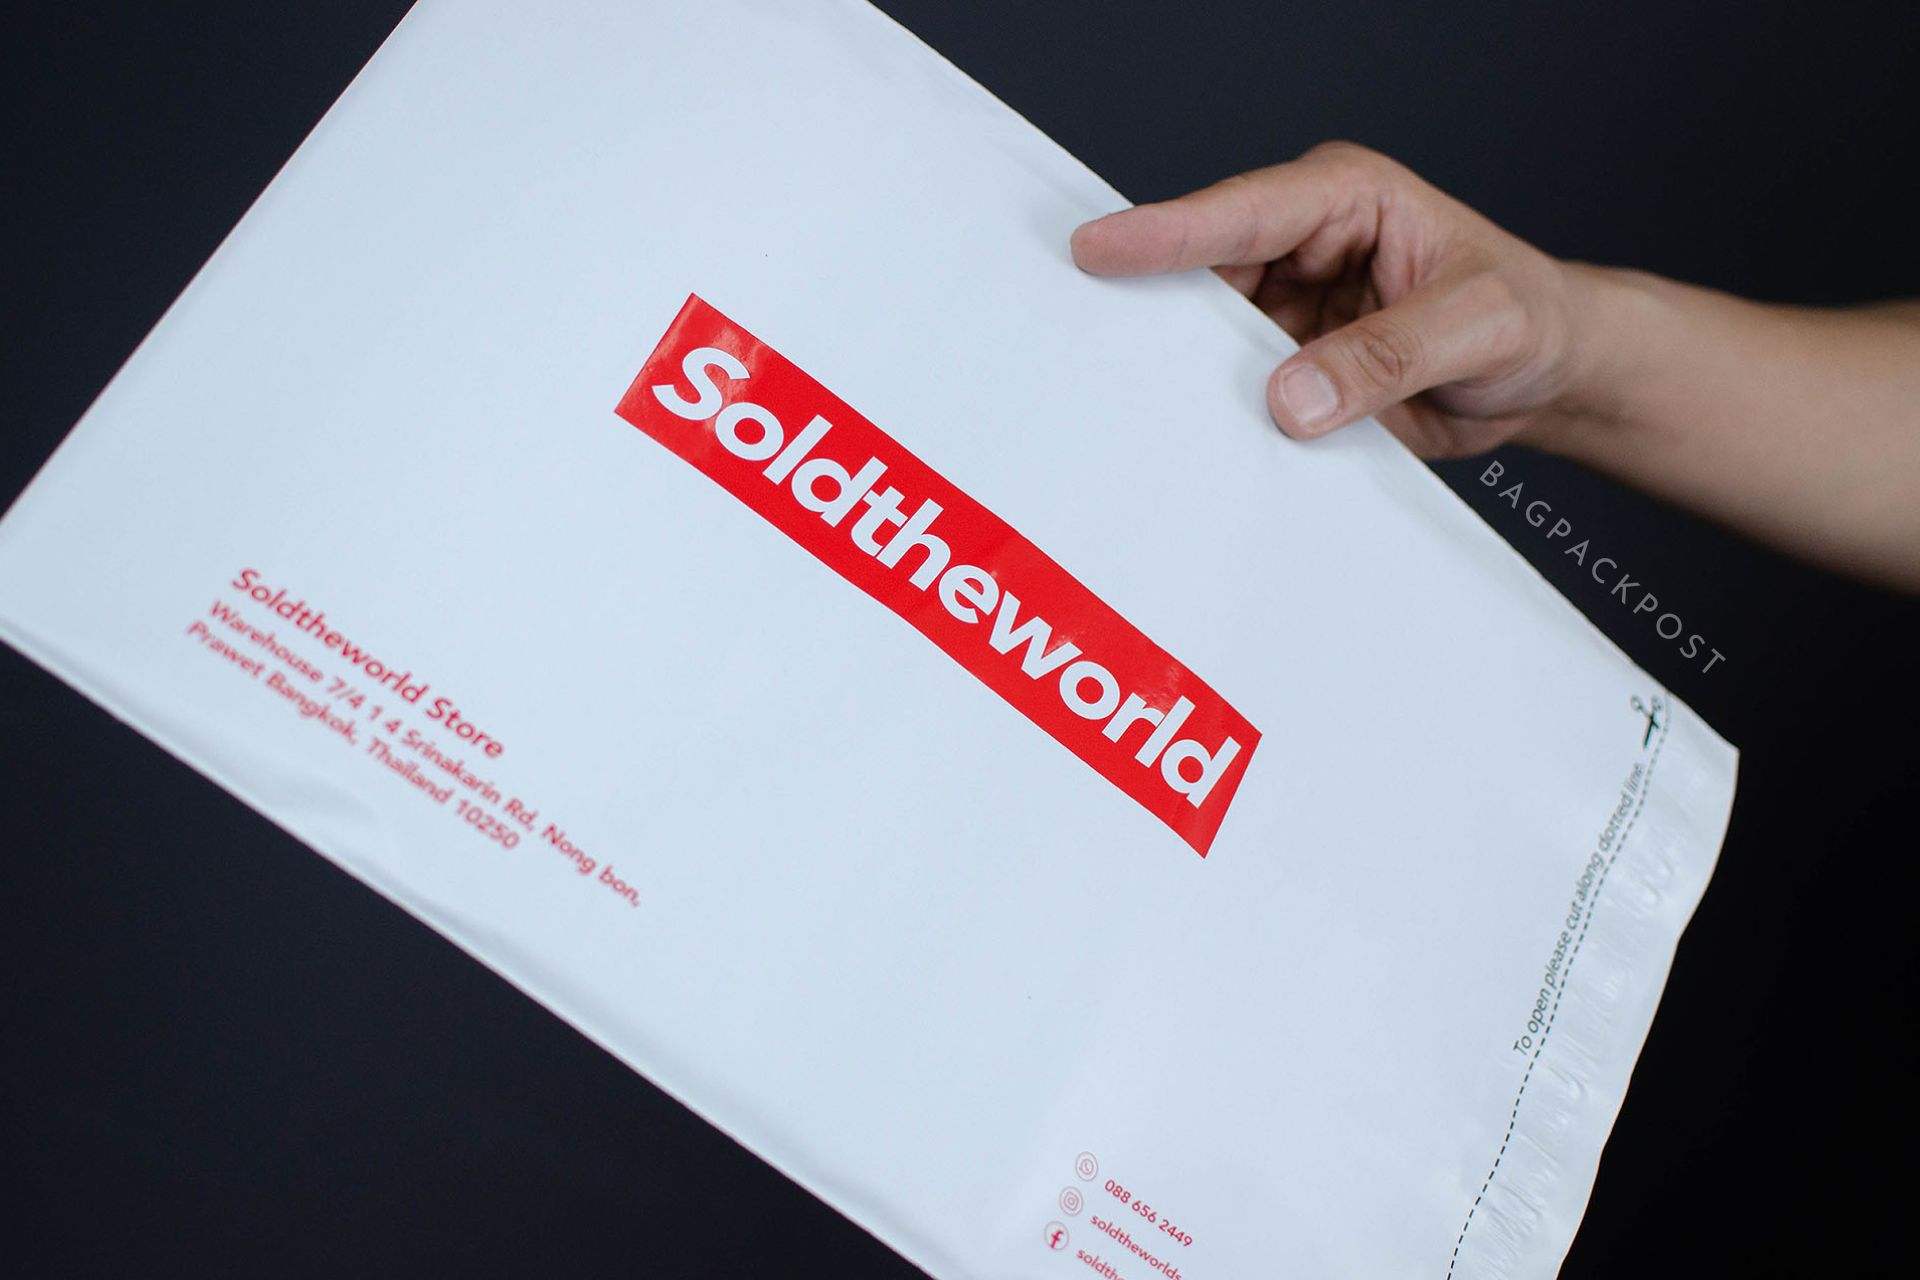 ผลิตถุงไปรษณีย์ ซองไปรษณีย์พิมพ์ลาย SoldTheWorldStore ซองไปรษณีย์สีขาว ถุงไปรษณีย์พิมพ์ลาย 5 BagPackPost